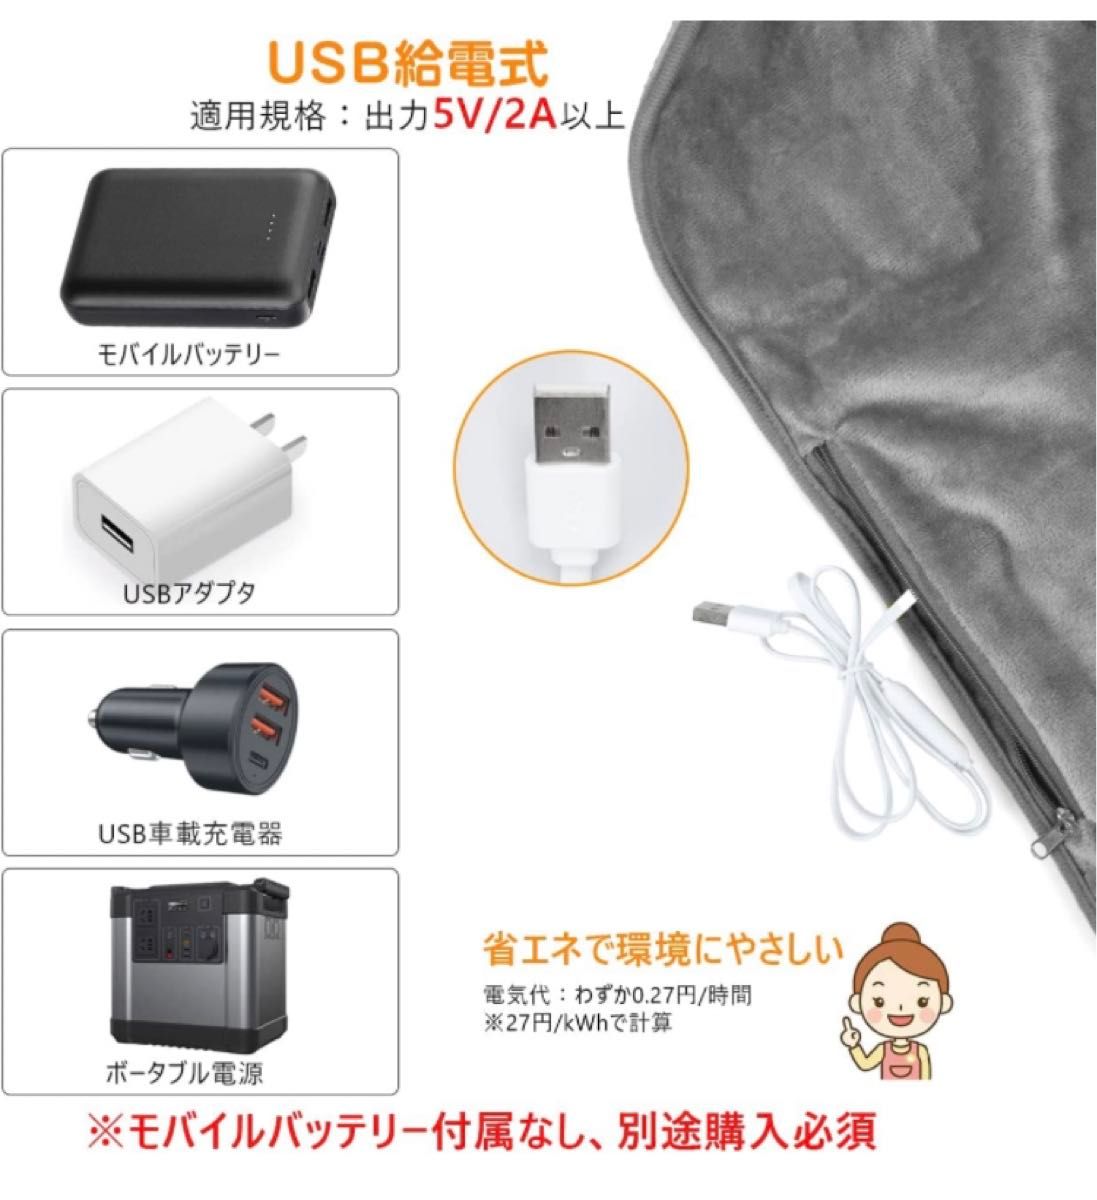 【発熱マット】電熱マット 寝袋用 シュラフ 加熱マット USB給電 防災対策 キャンプ アウトドア 丸洗い 防寒 